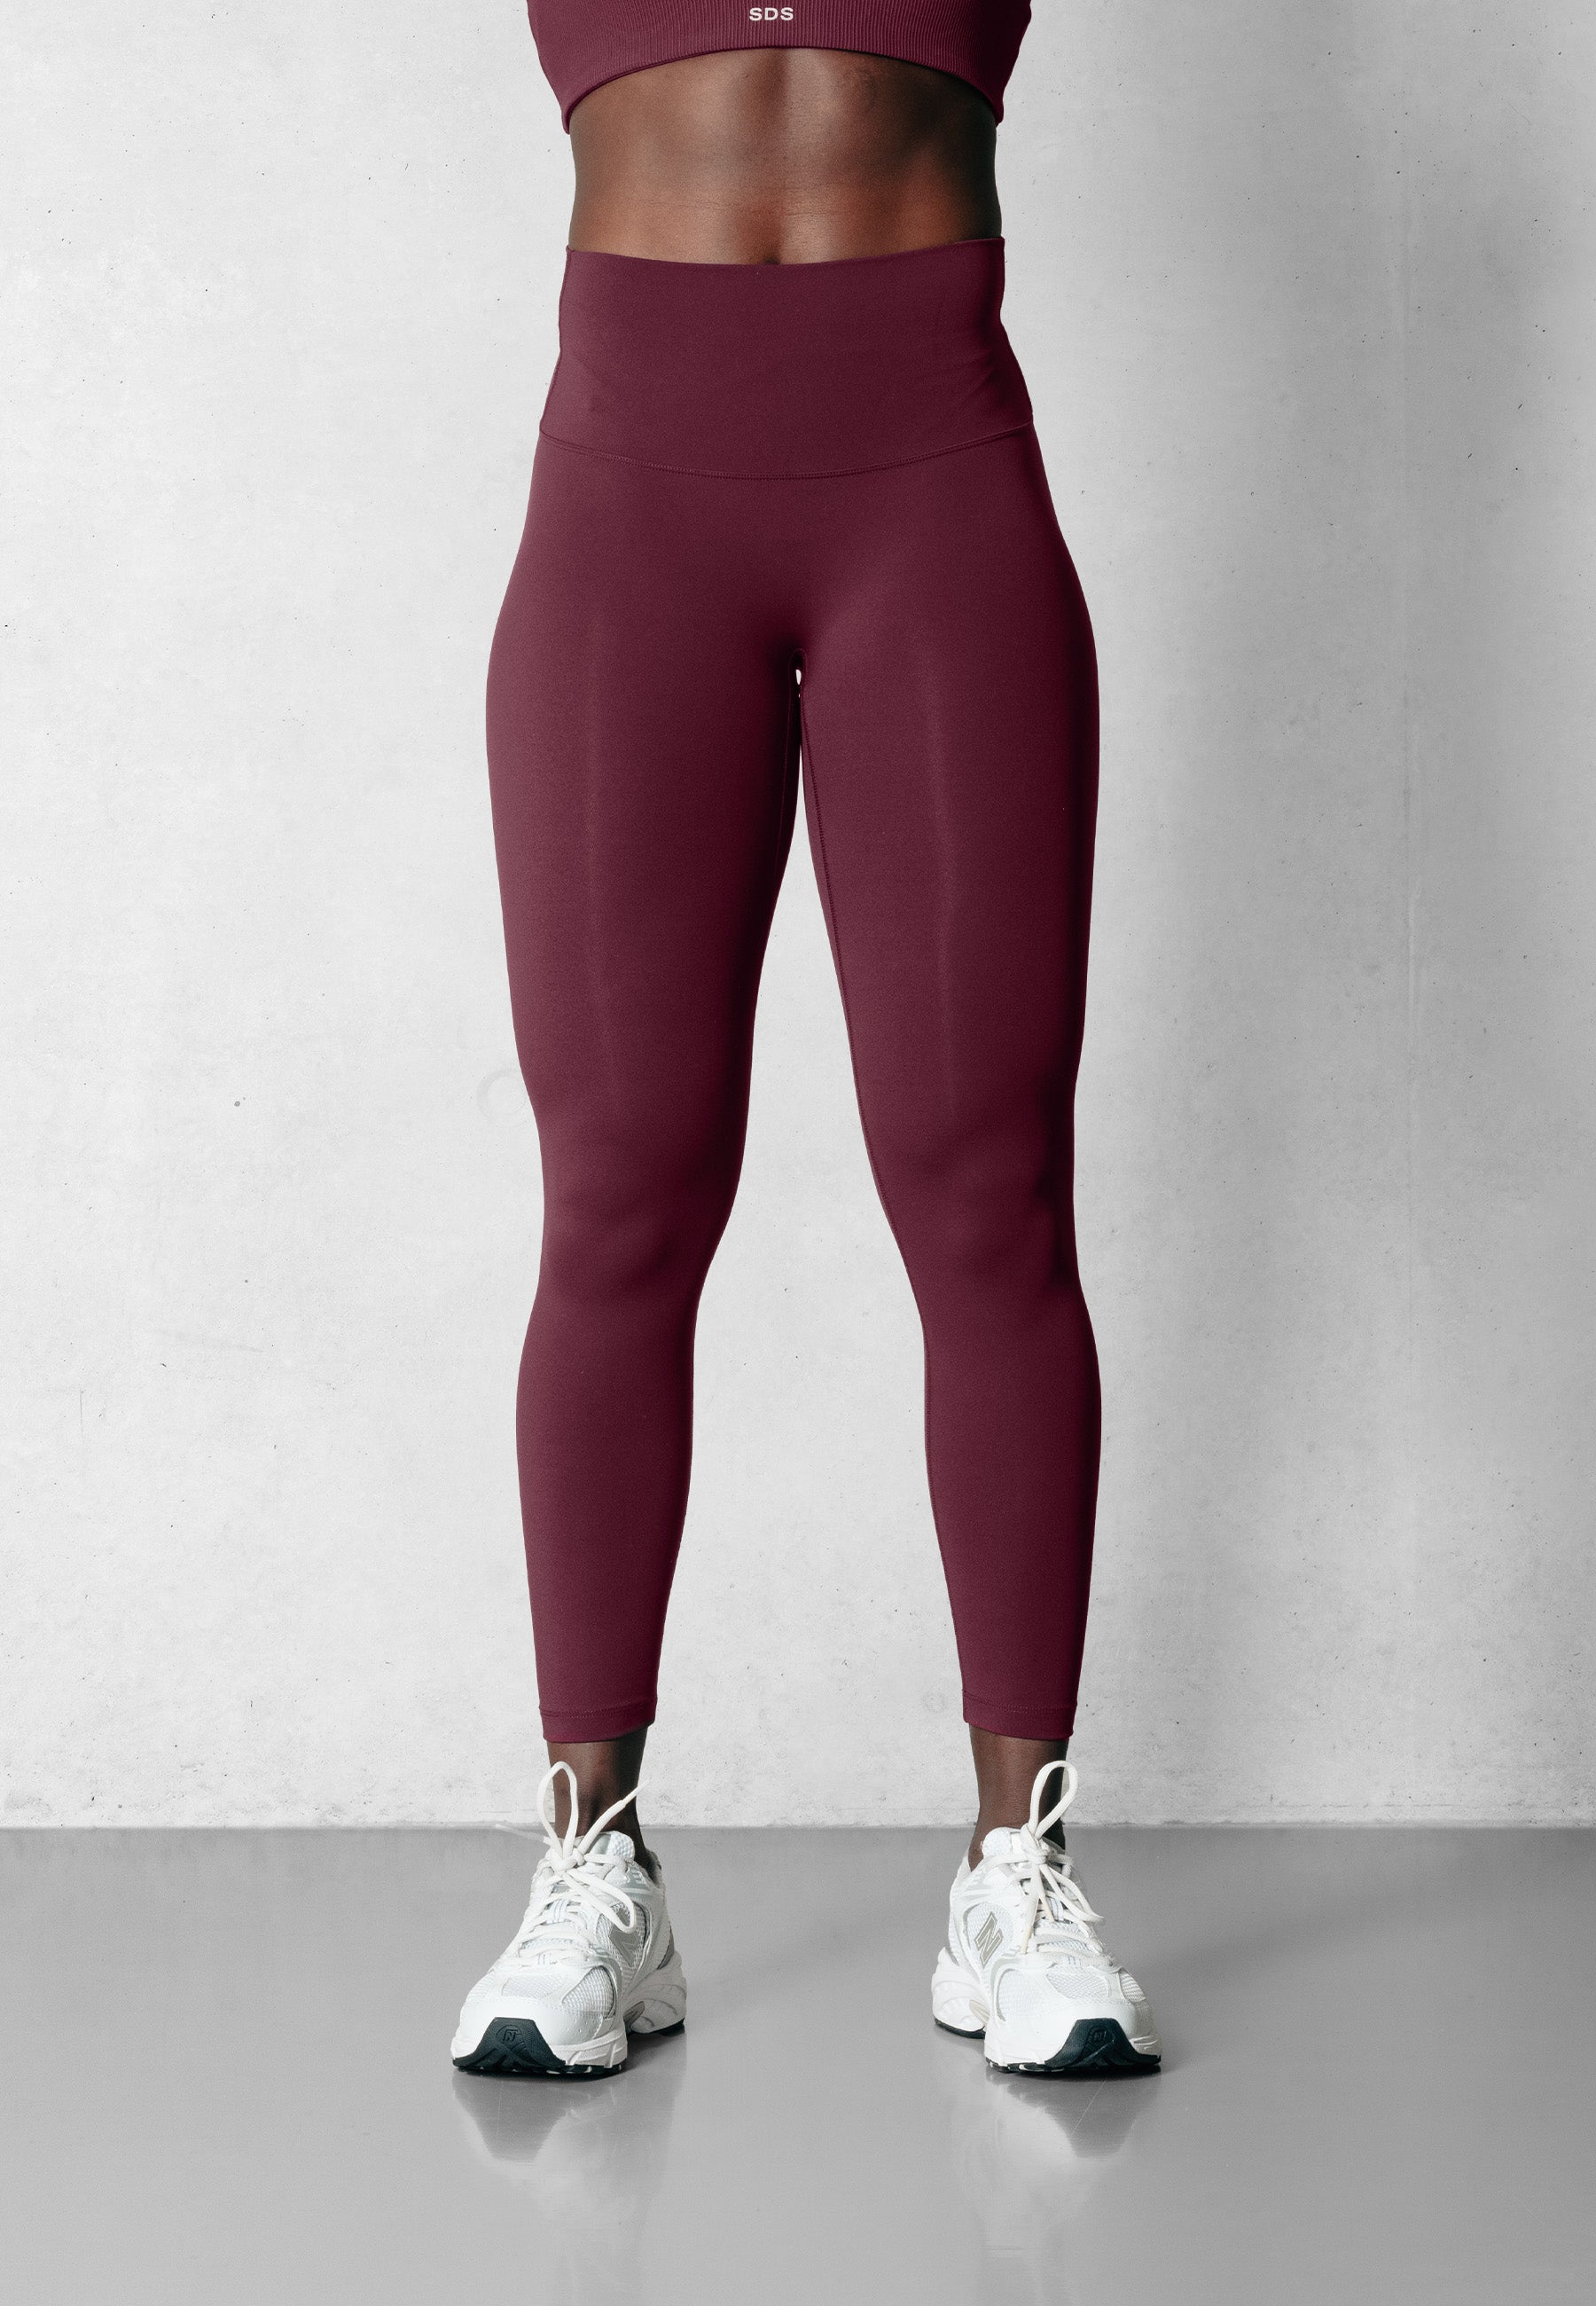 XO Women's Merlot Red Leggings  Maroon Workout Leggings – A7